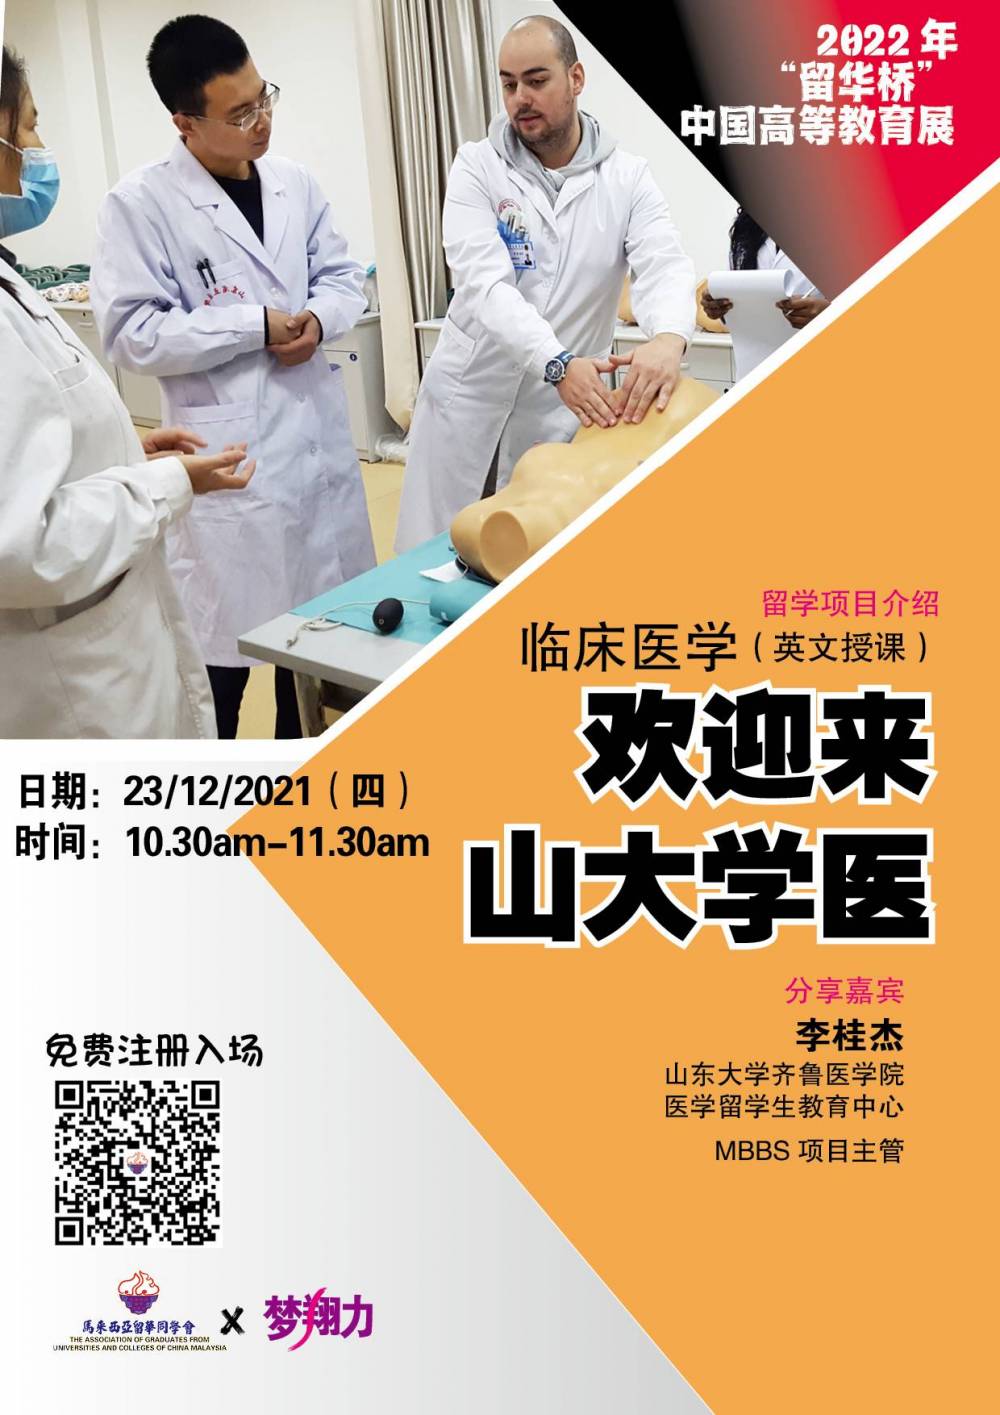 欢迎来中国学医-临床医学（英文授课）留学项目介绍